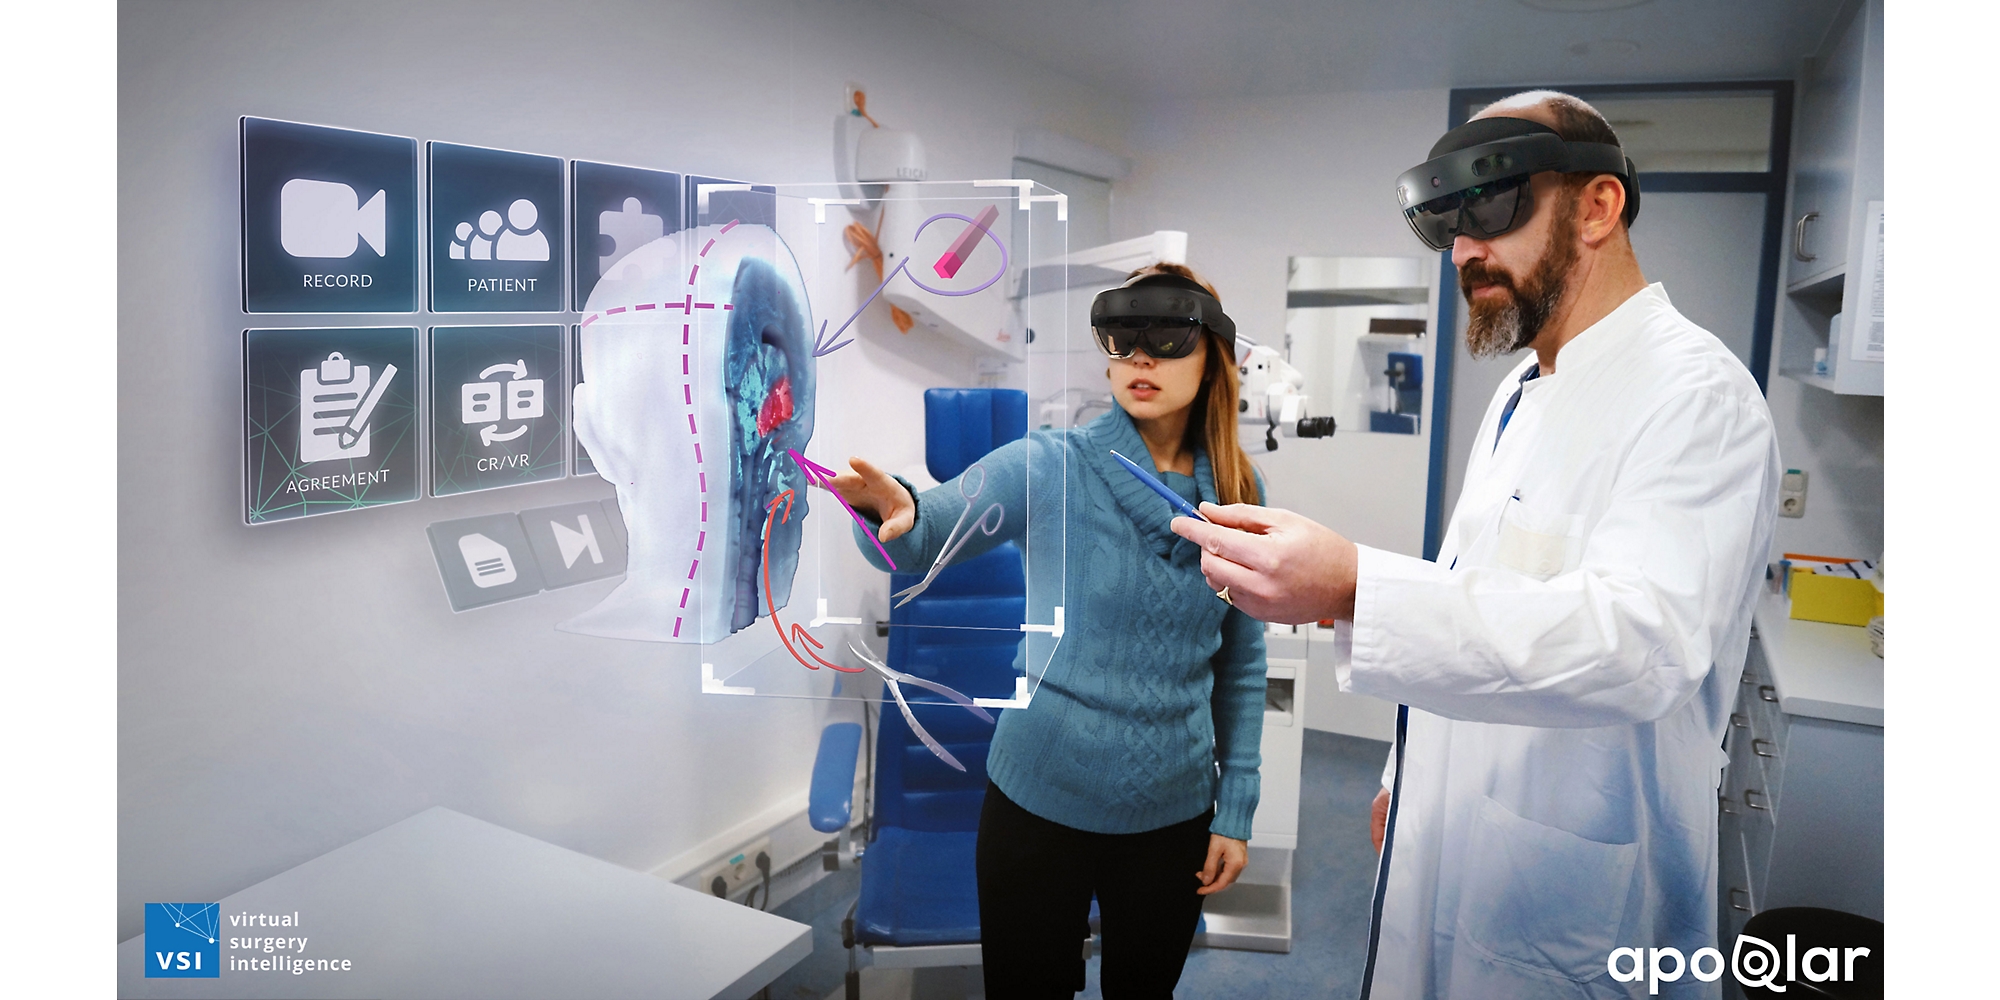 طبيب وأخصائي رعاية صحية آخر يستخدمان أجهزة HoloLens 2 لإلقاء نظرة على رسم تخطيطي للواقع المختلط لرأس بشري.